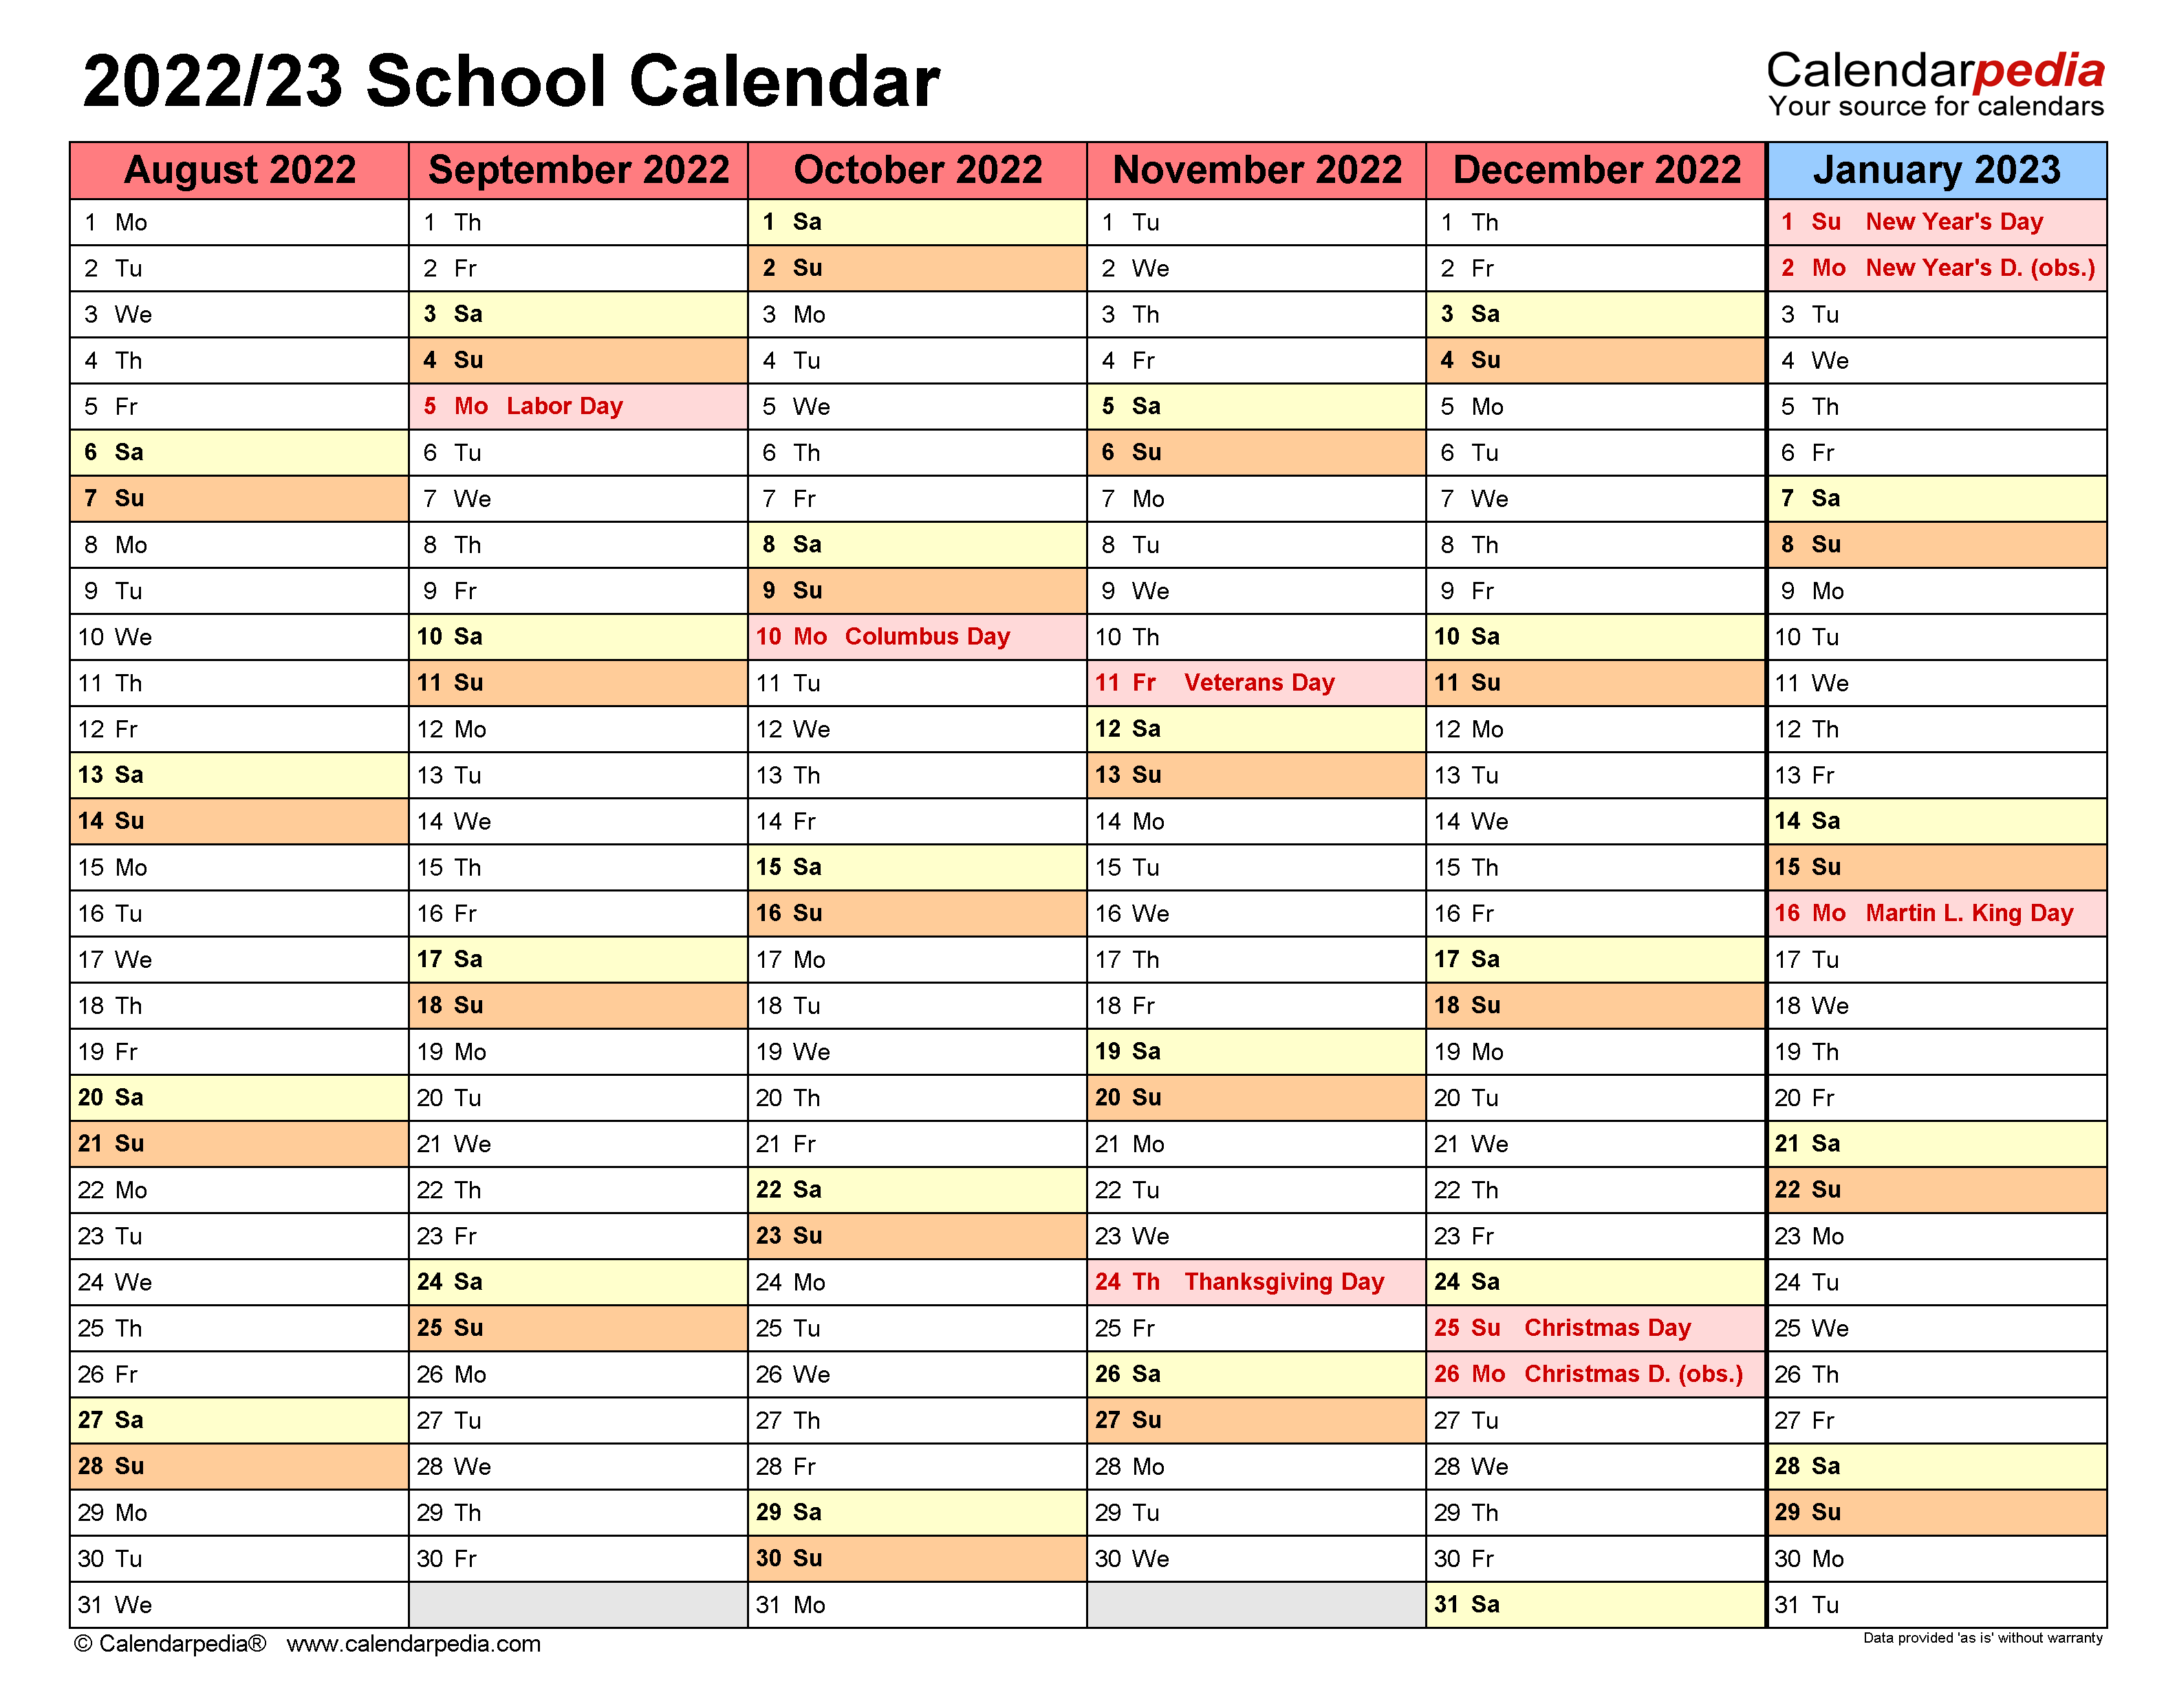 Basis Mclean Calendar 20222023